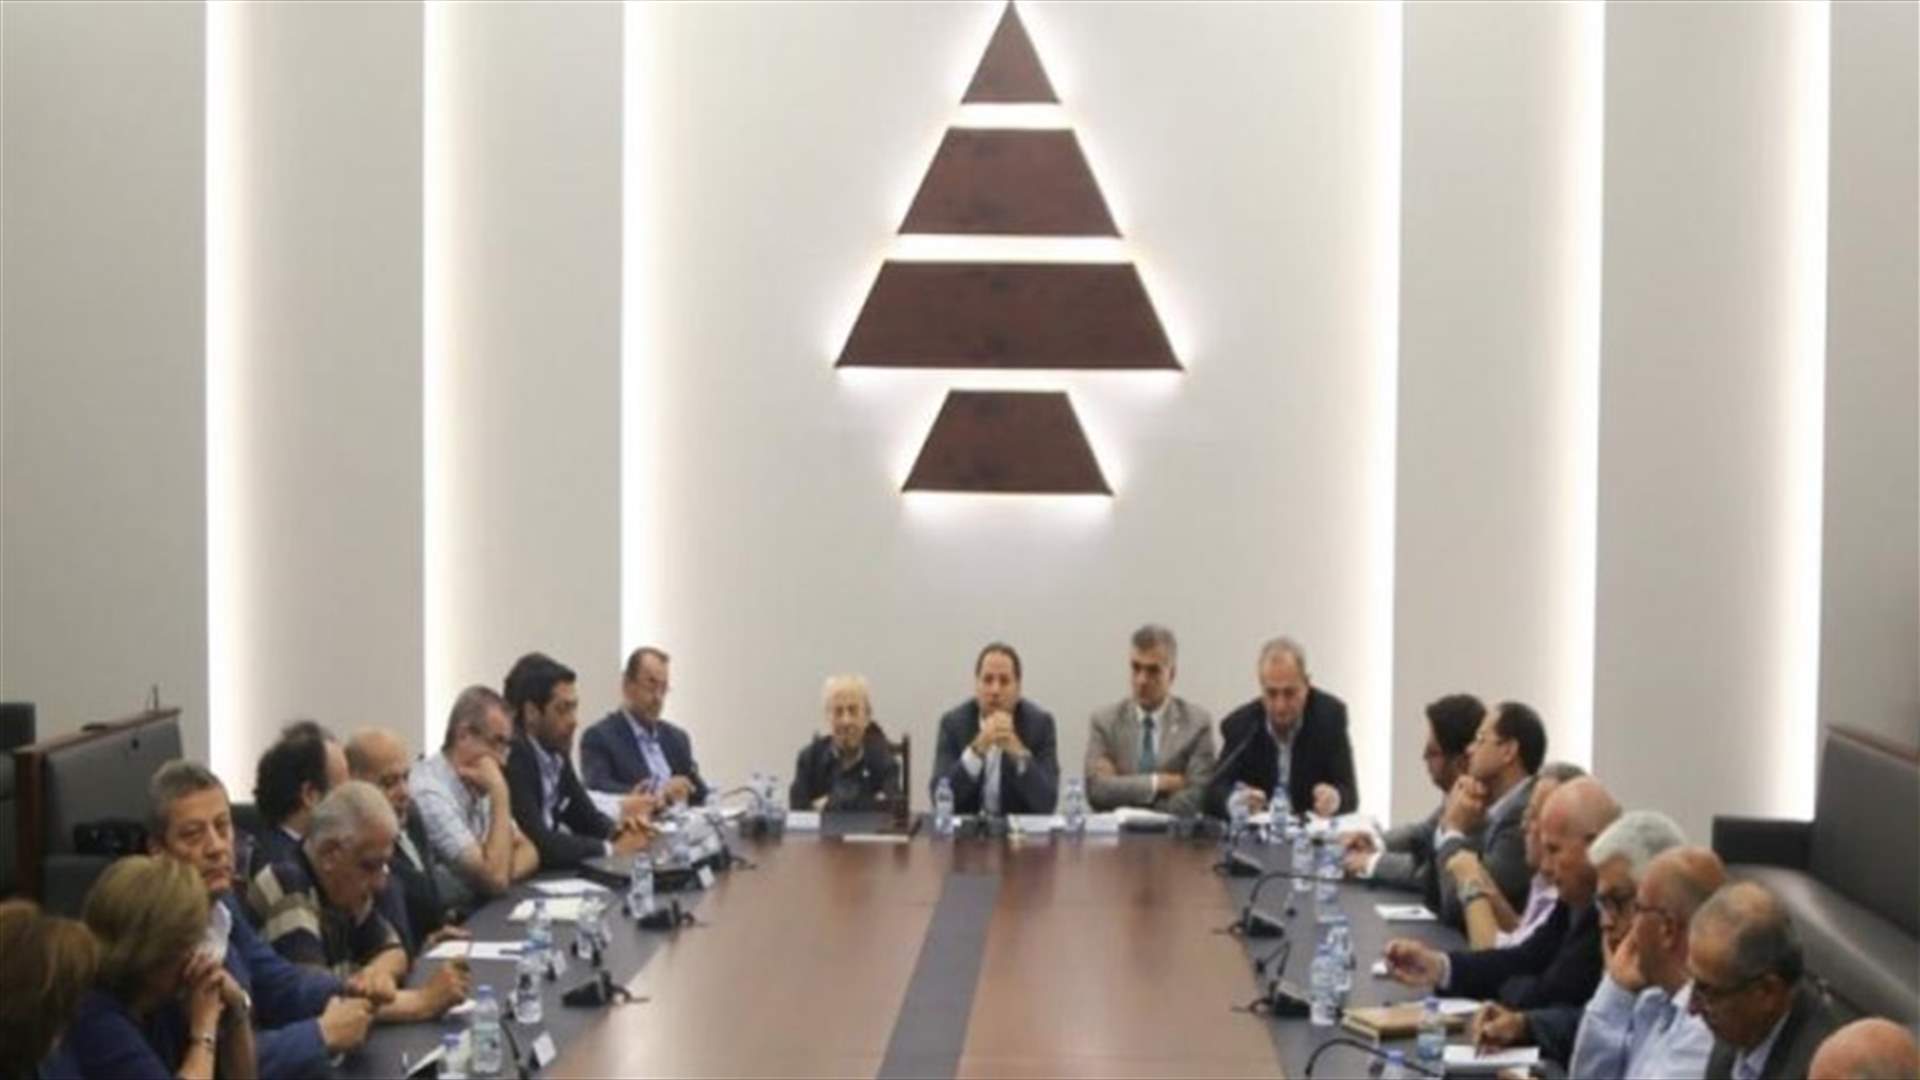 الكتائب: لتضافر الجهود لانتخاب رئيس جريء قادر على إخراج لبنان من الانهيار